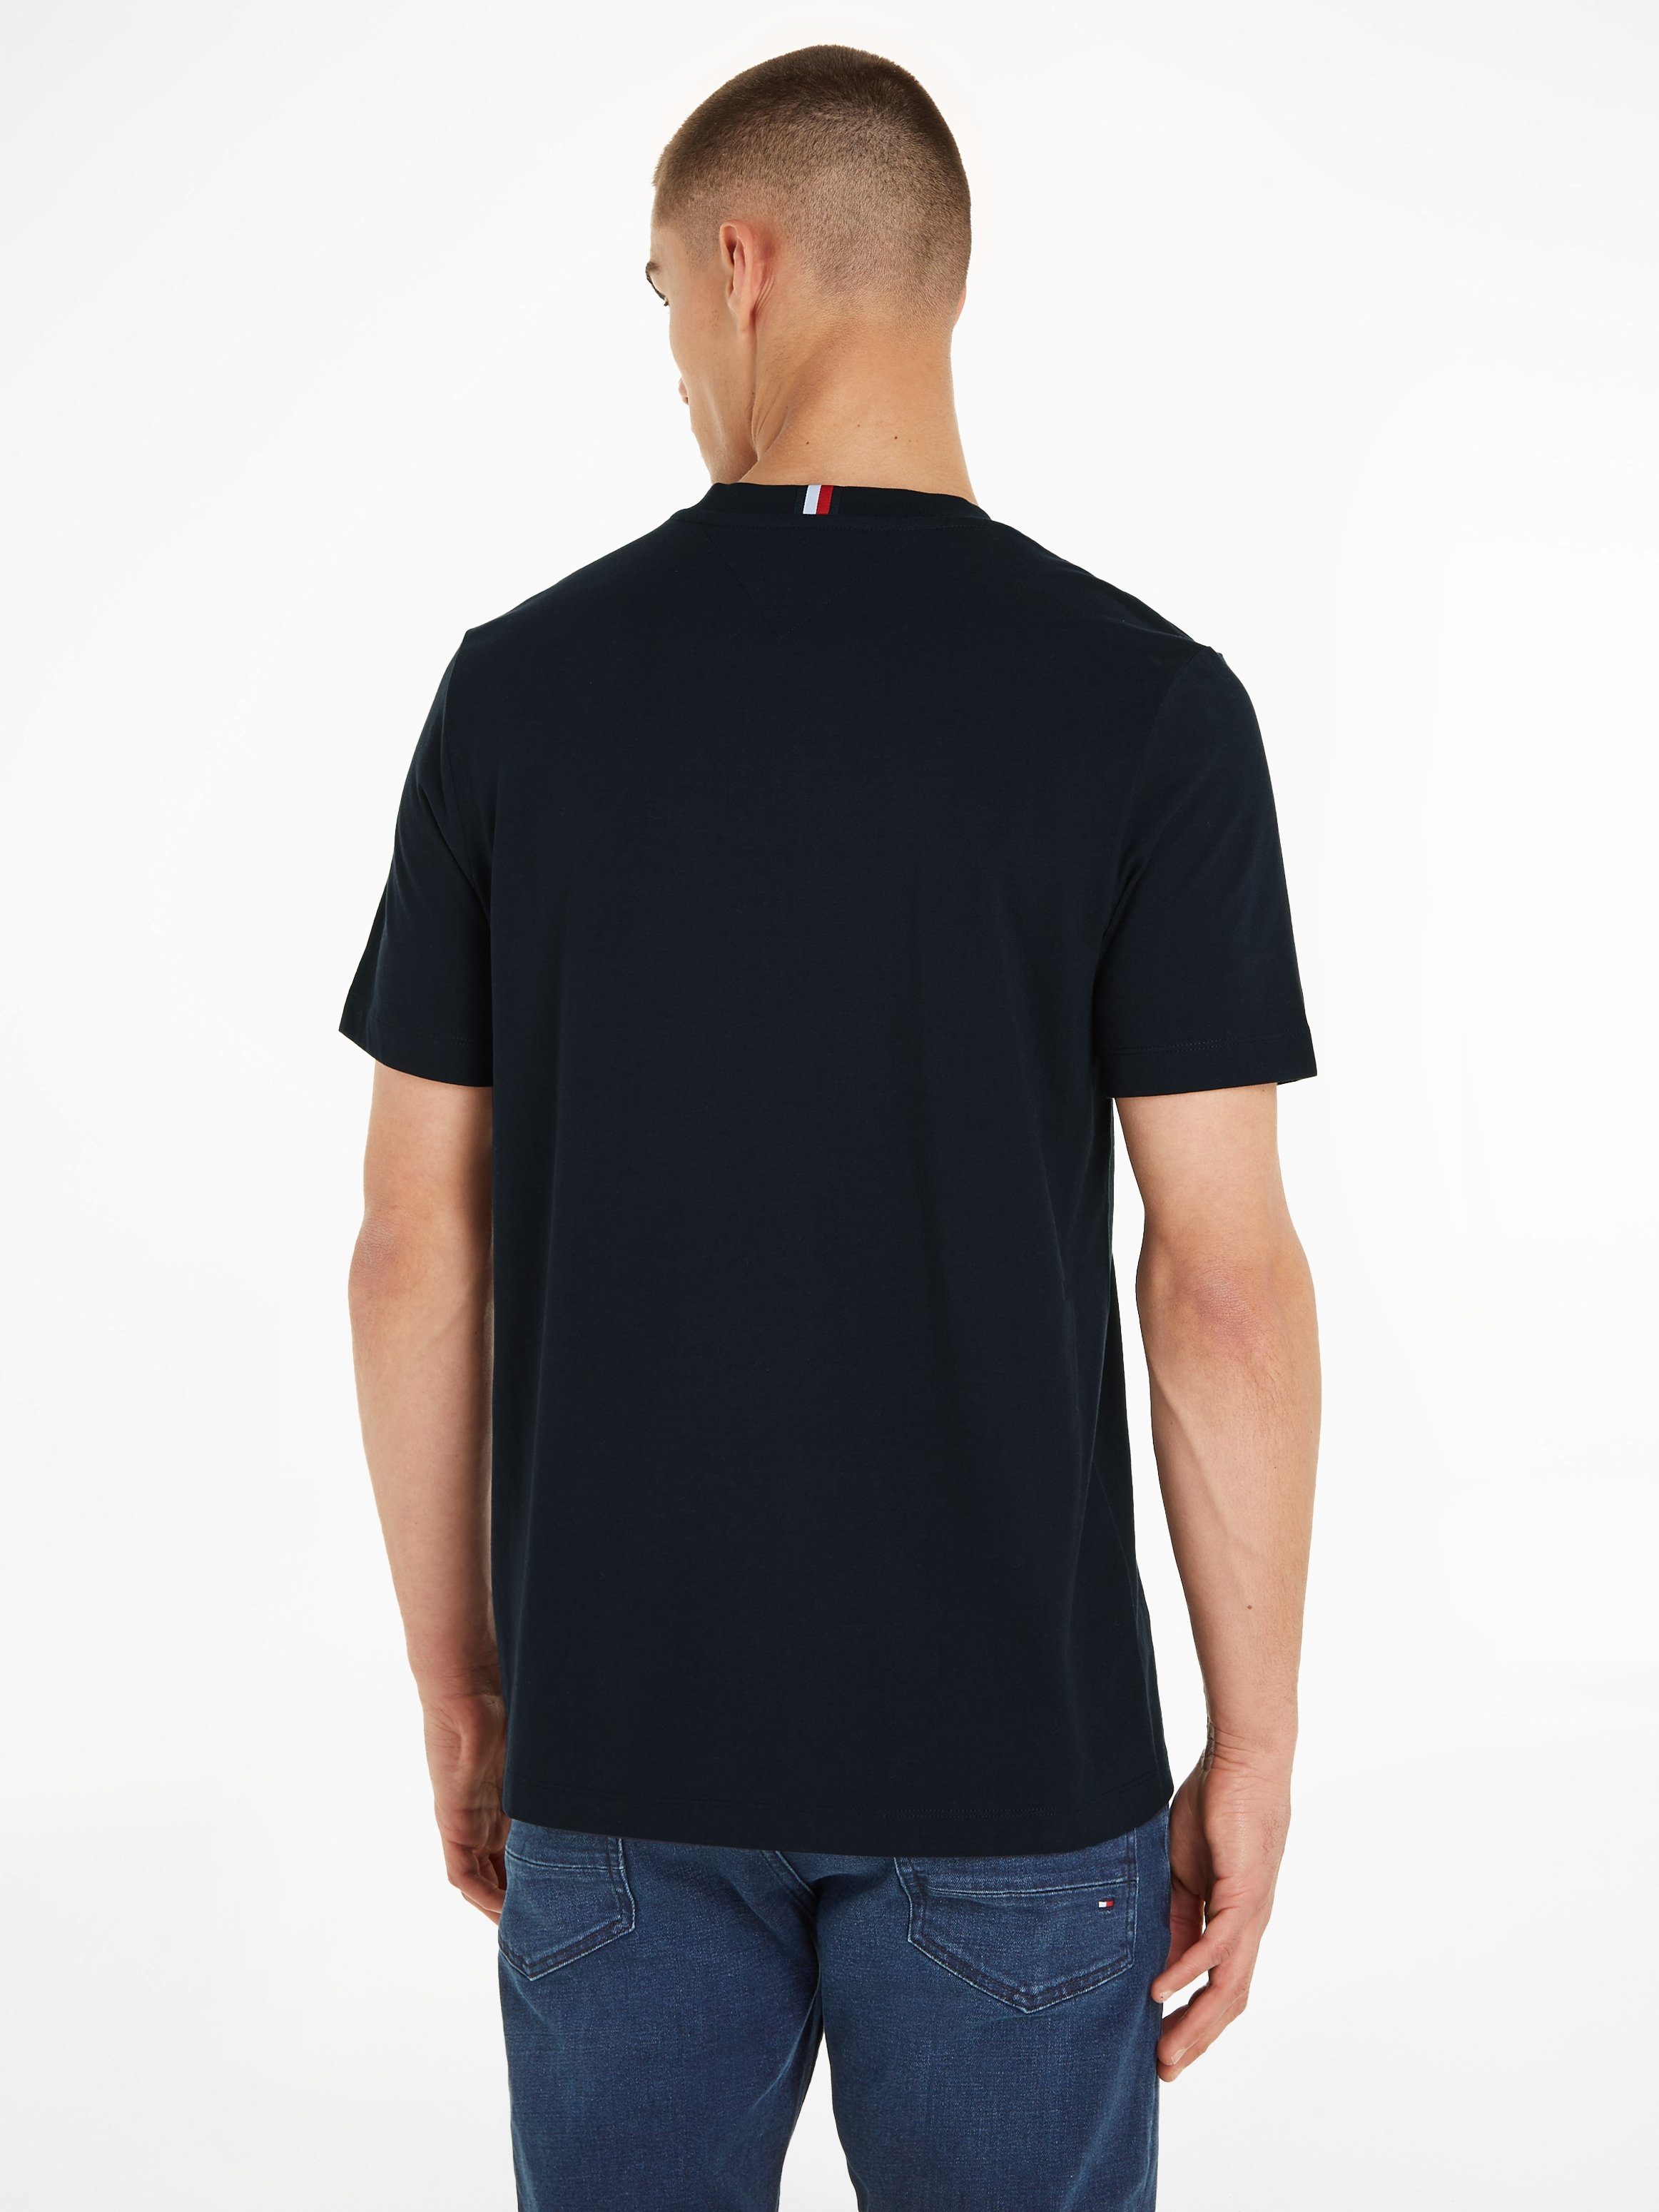 Tommy Hilfiger T-Shirt MONOTYPE Sky CHEST Desert STRIPE Markenlogo TEE mit